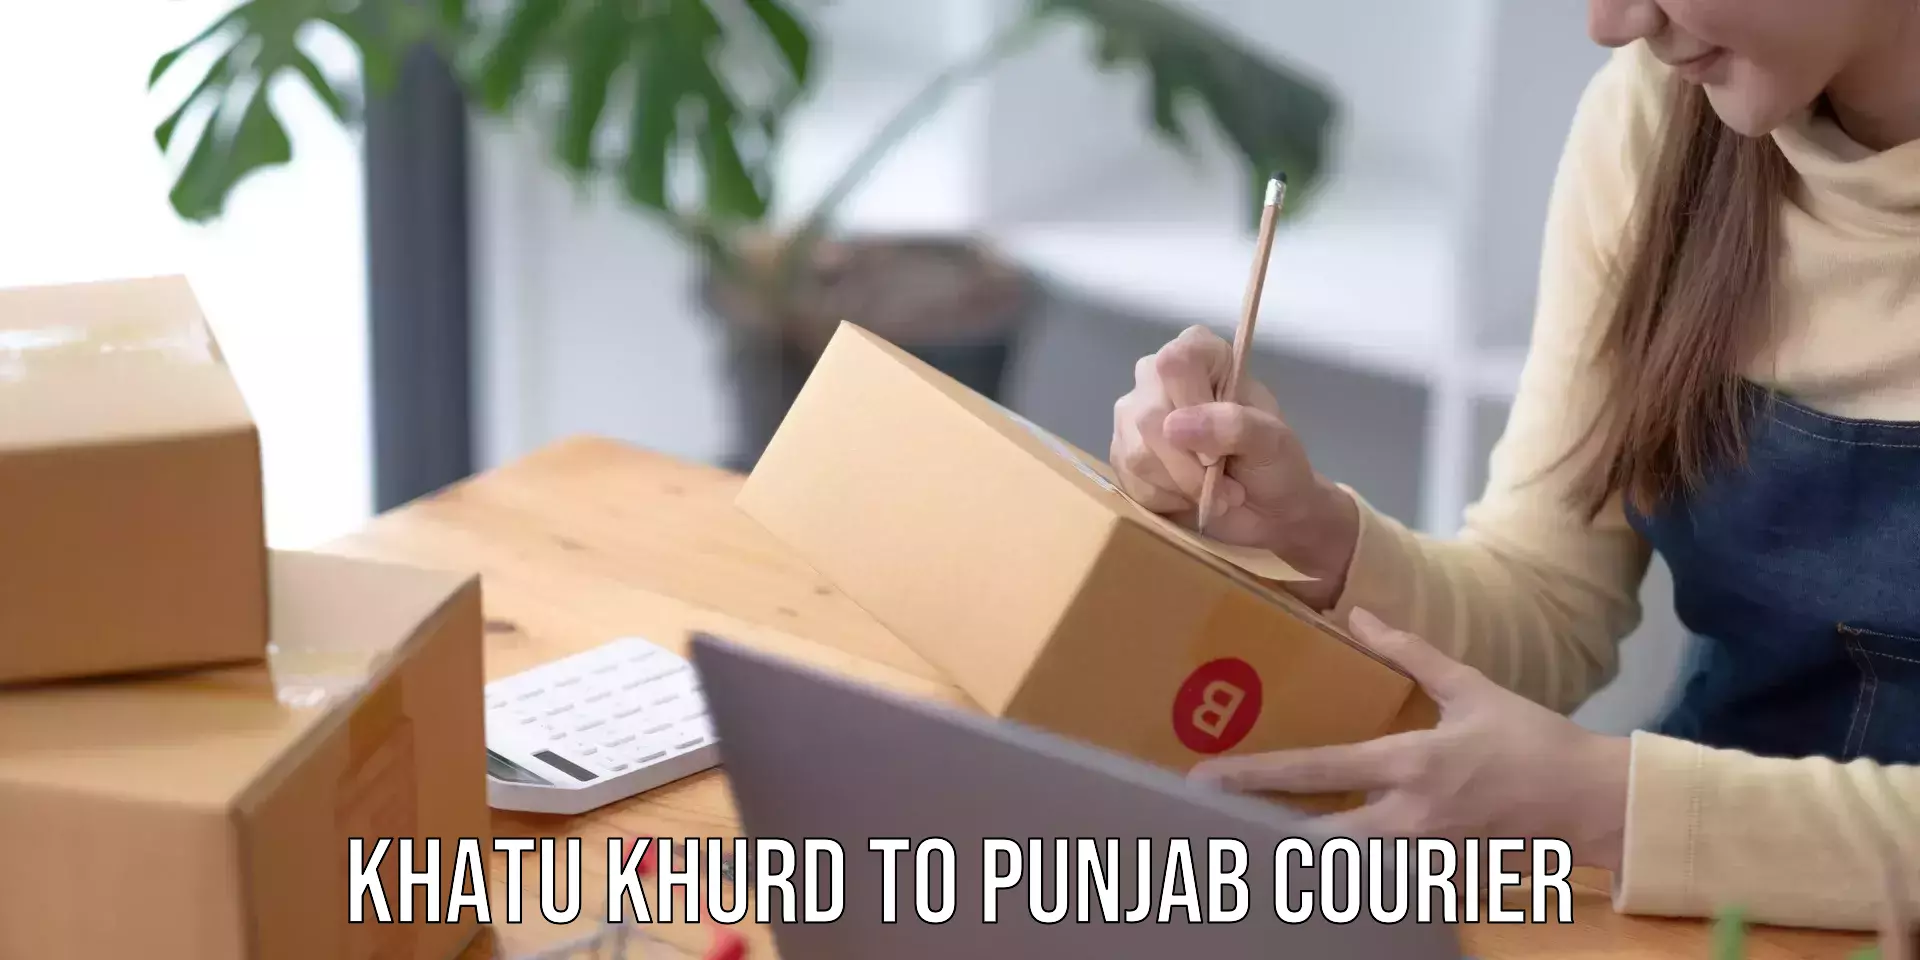 Courier service comparison Khatu Khurd to Pathankot